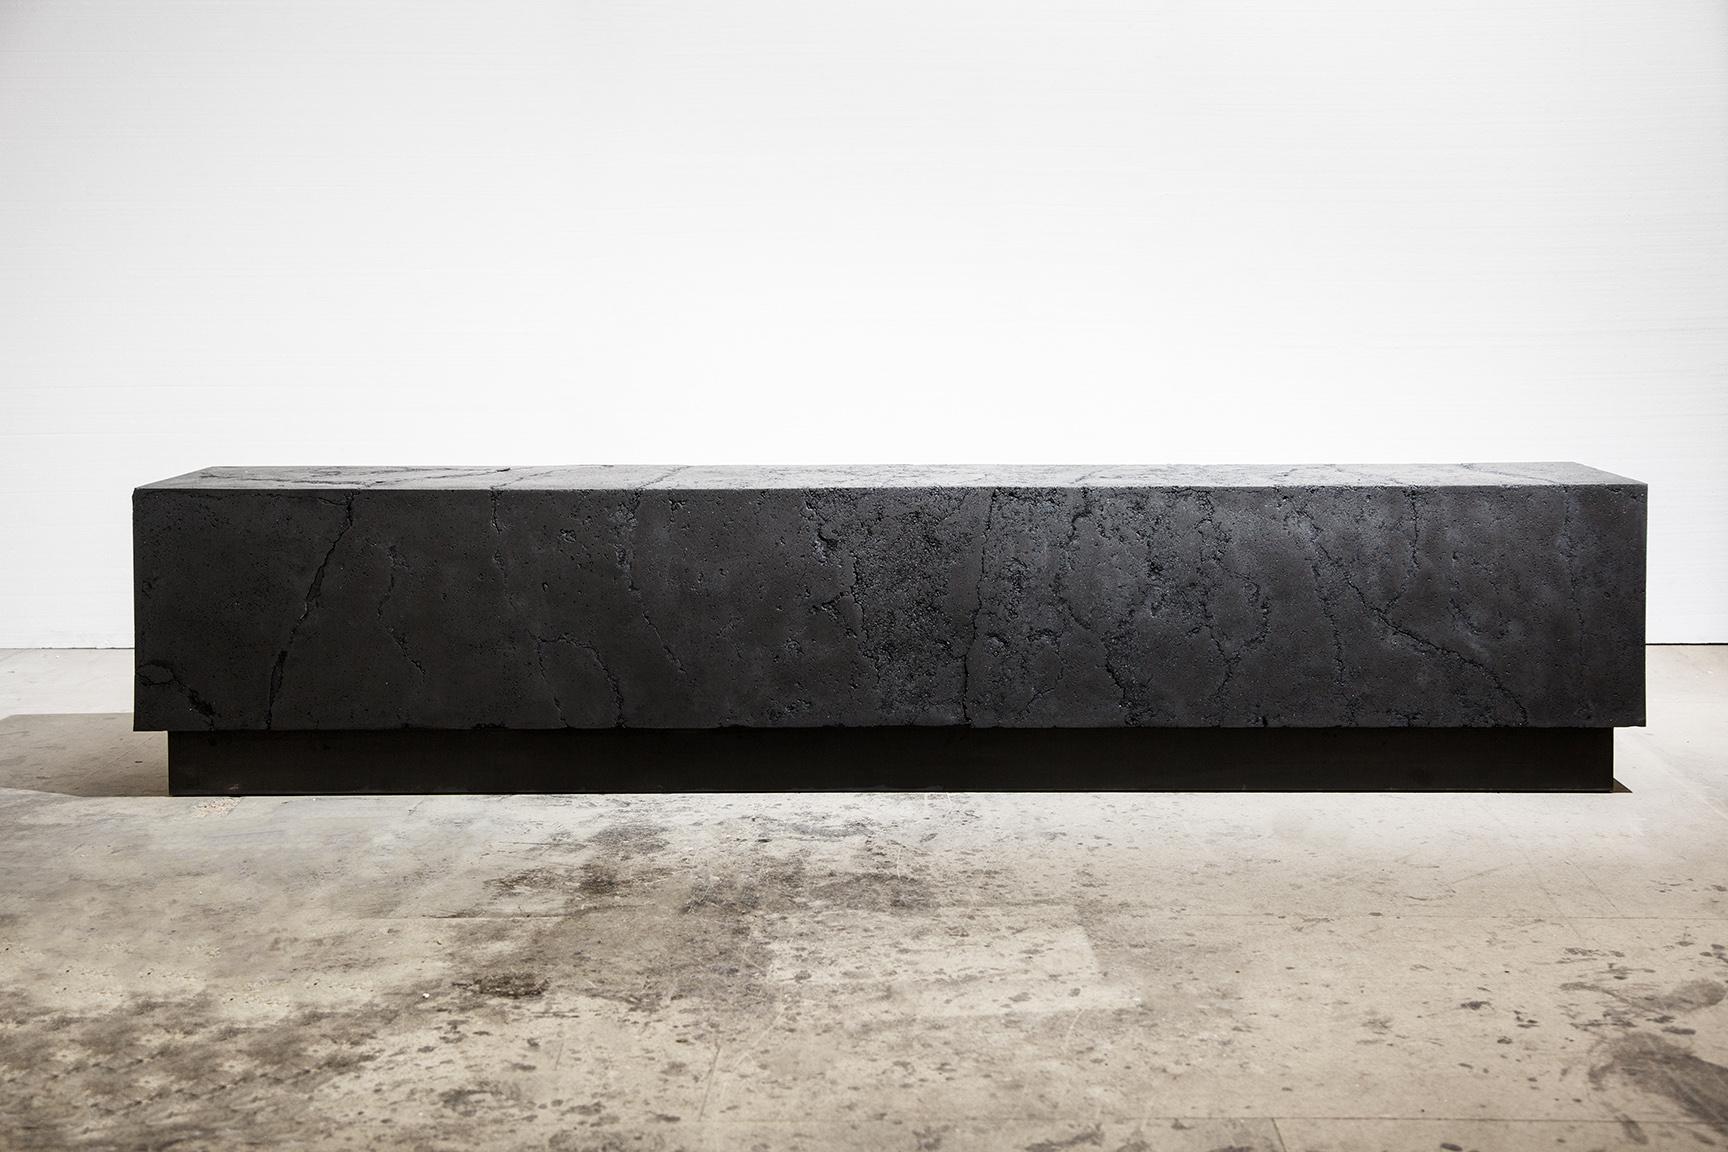 Carbon M ist eine einzigartige Skulptur des zeitgenössischen Künstlers Tom Price. Die Skulptur ist aus Kohle, Jesmonit, Holz und Stahl gefertigt und hat die Maße 45 cm × 220 cm × 35 cm (17,7 × 86,6 × 13,8 in).
Dieses Kunstwerk ist als Auftragsarbeit